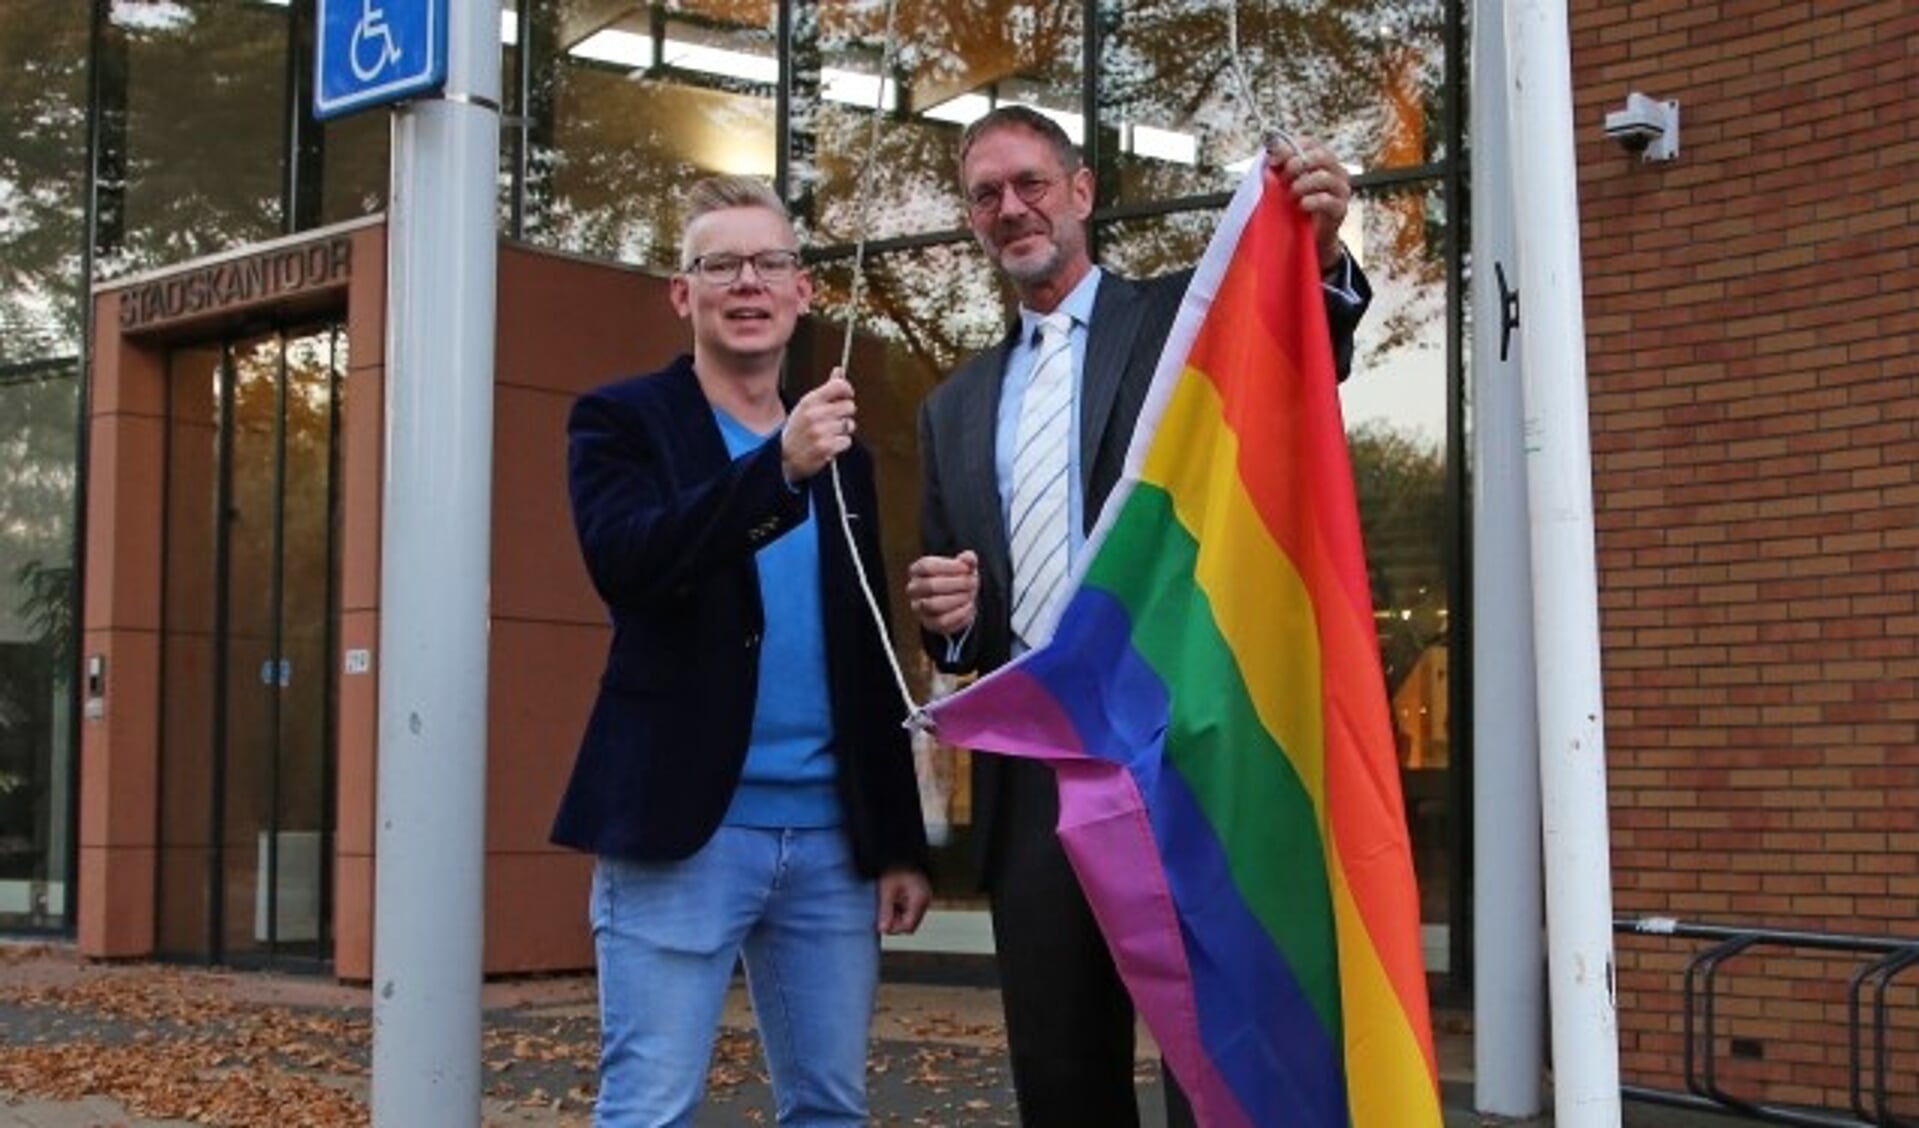 Wethouder Bob Duindam van Oudewater en Remon van Breukelen hijsen de regenboogvlag.